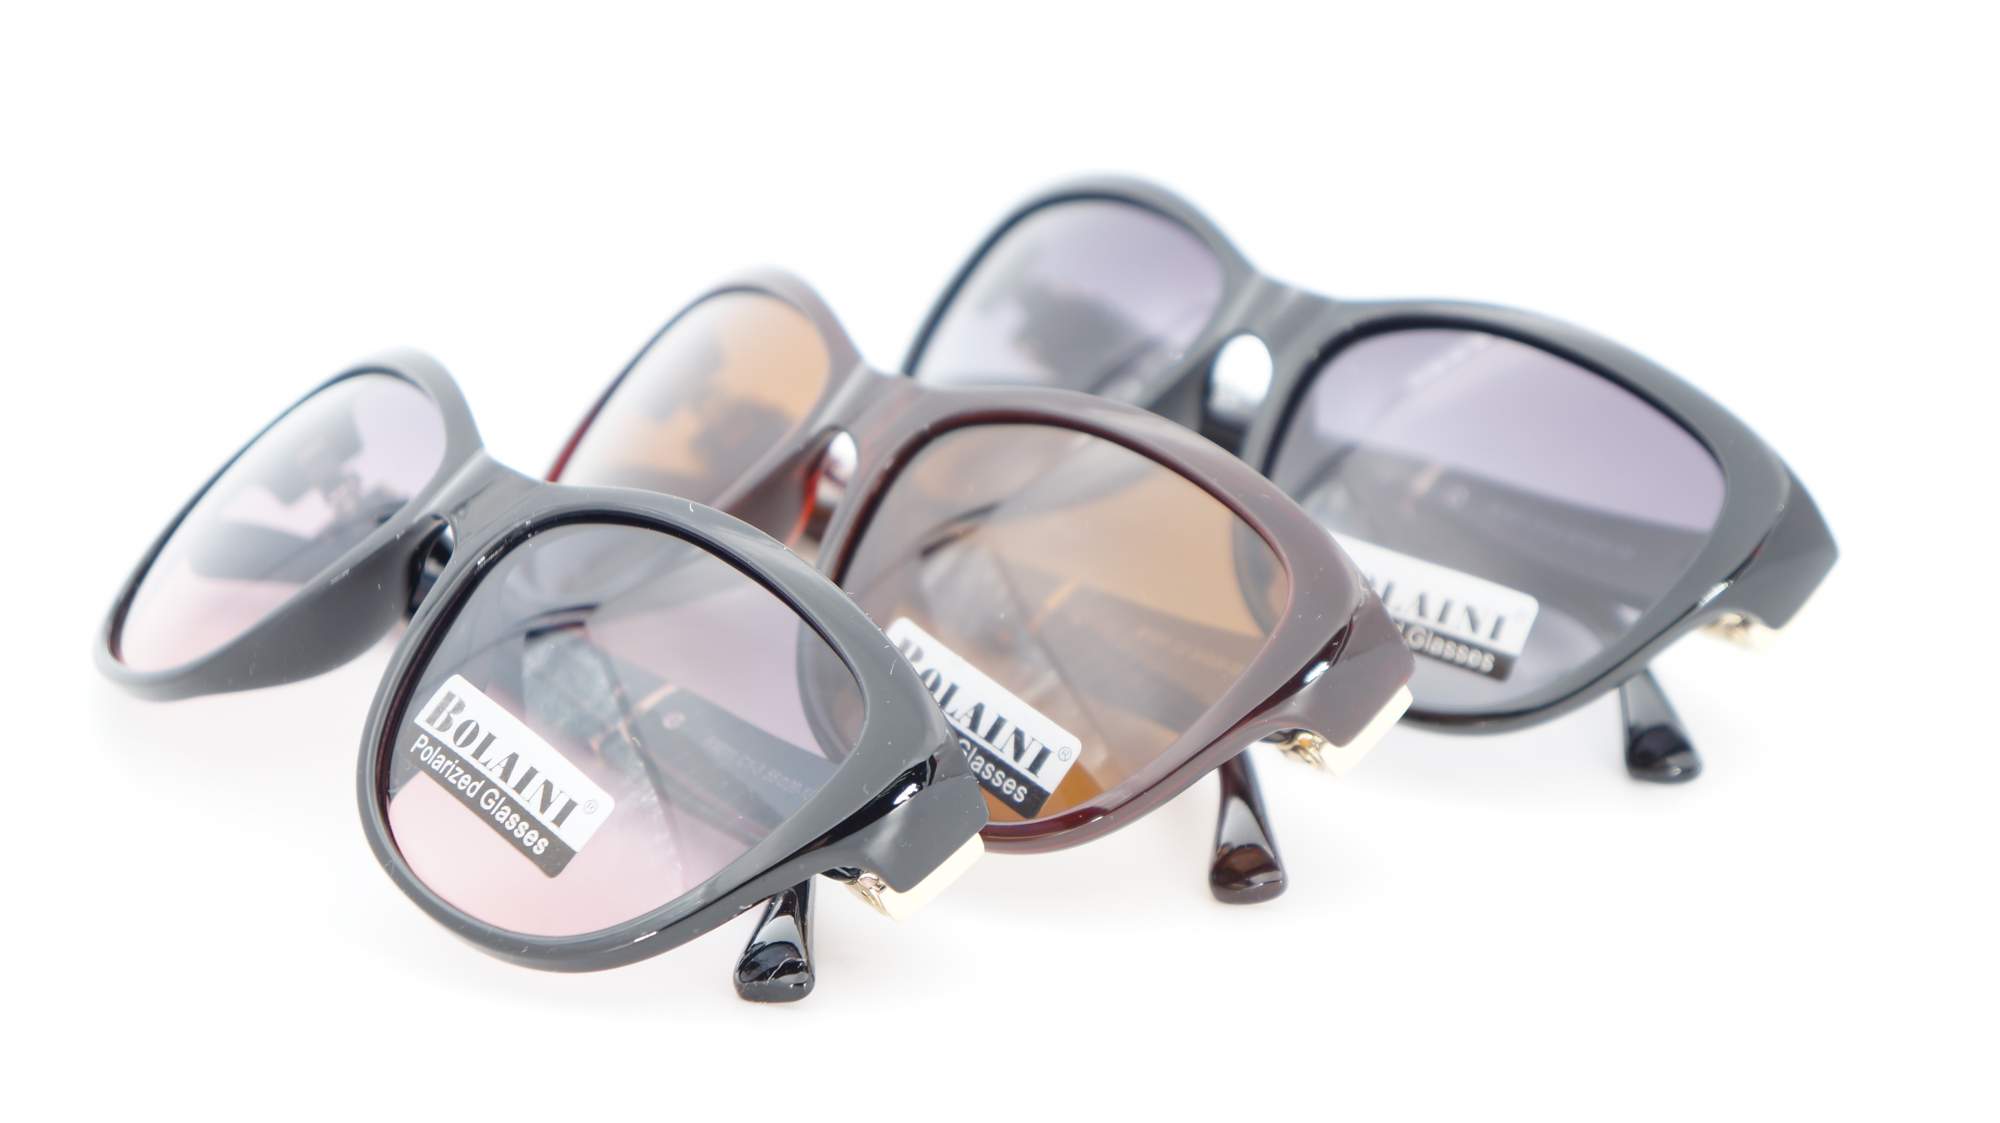 Солнцезащитные очки женские PREMIER B1011